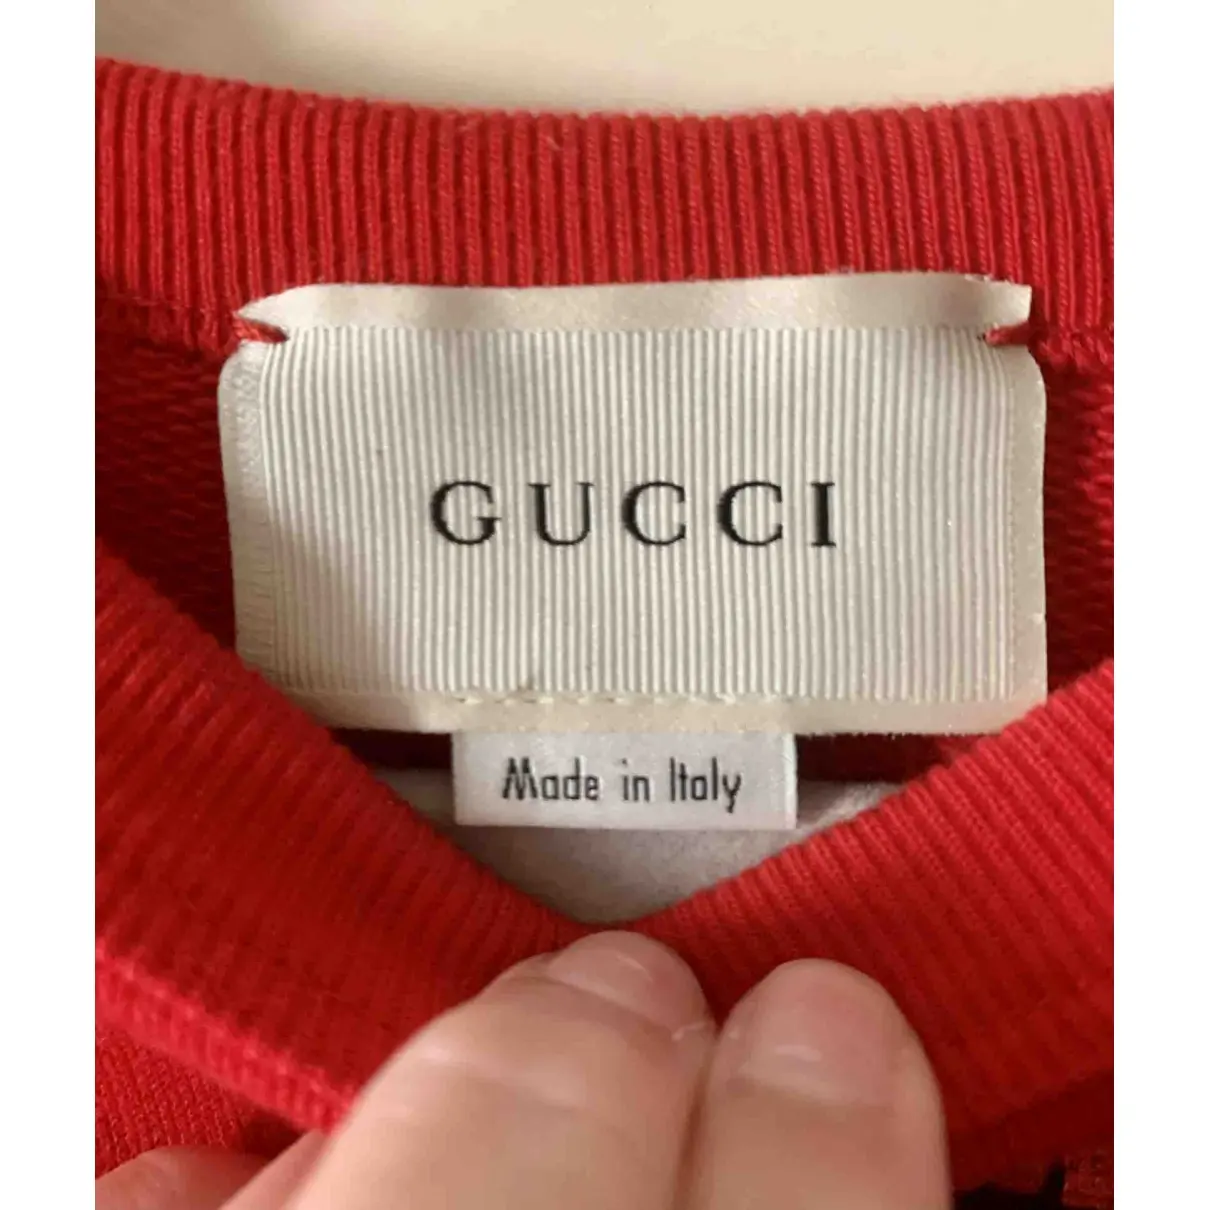 Top Gucci